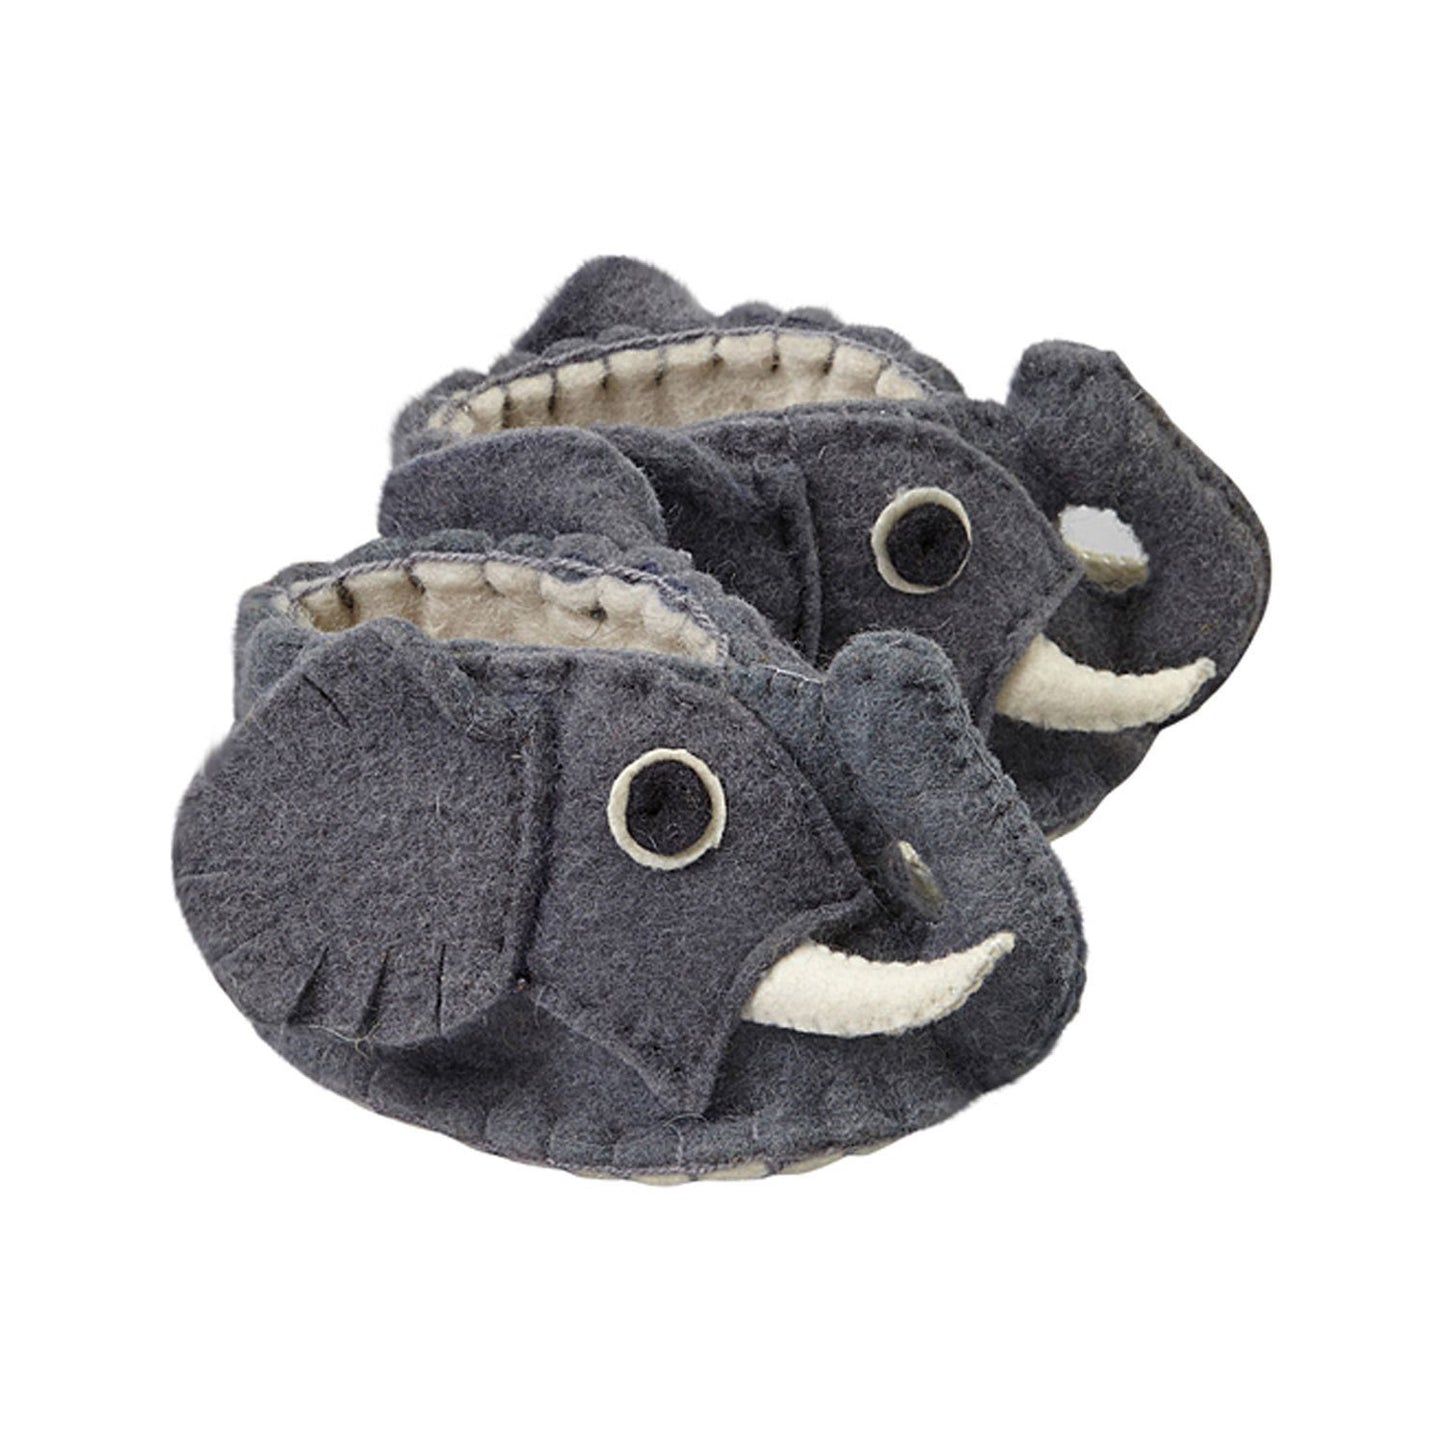 Silk Road Bazaar Elephant Zooties Baby Booties
Jungle Pillows